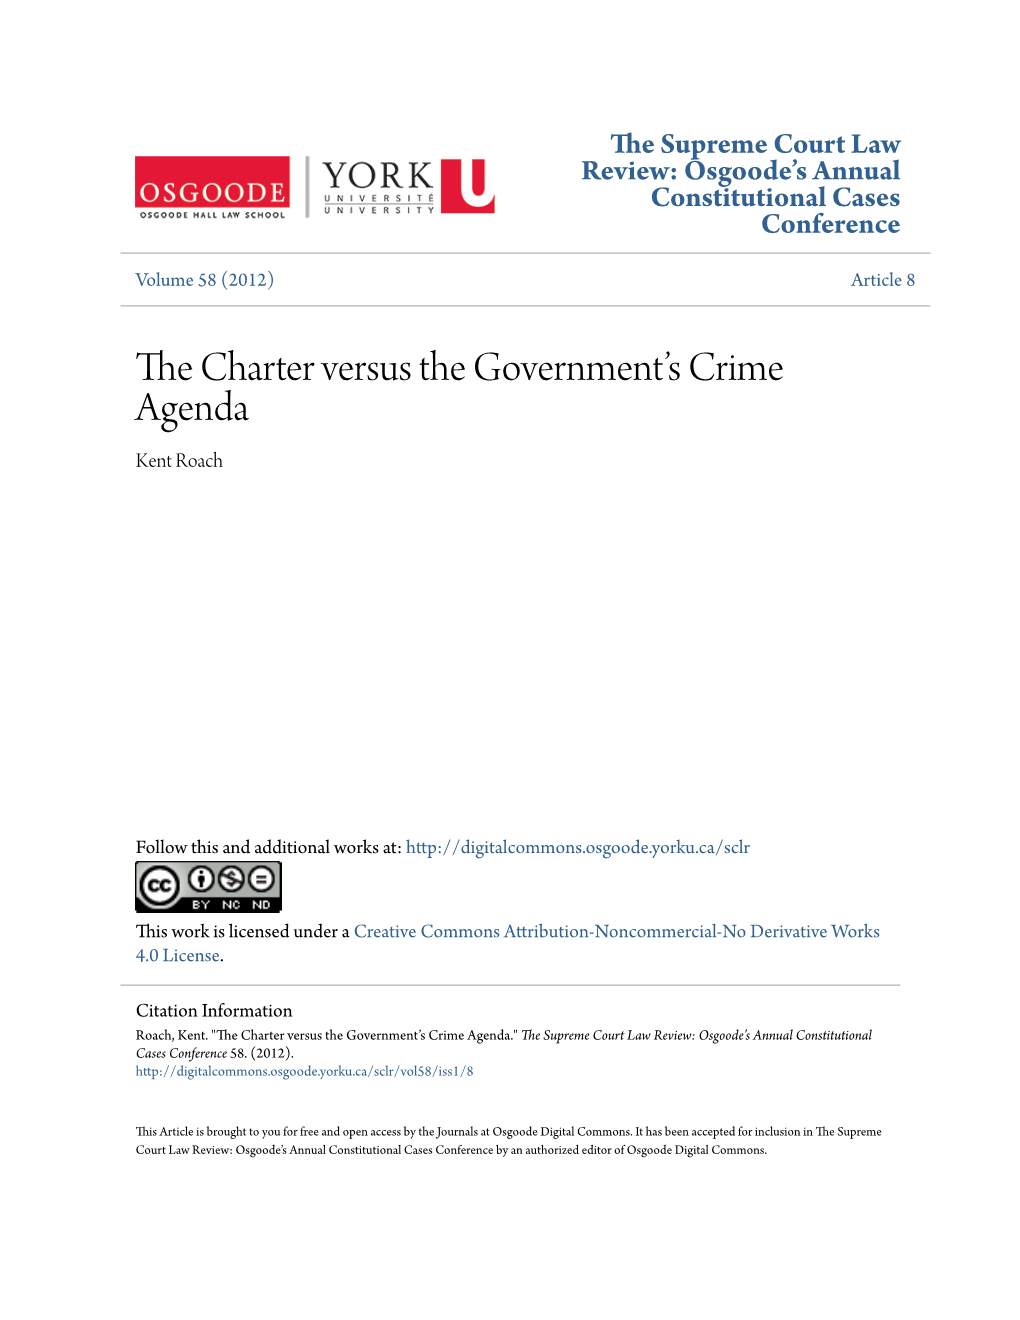 The Charter Versus the Governmentâ•Žs Crime Agenda